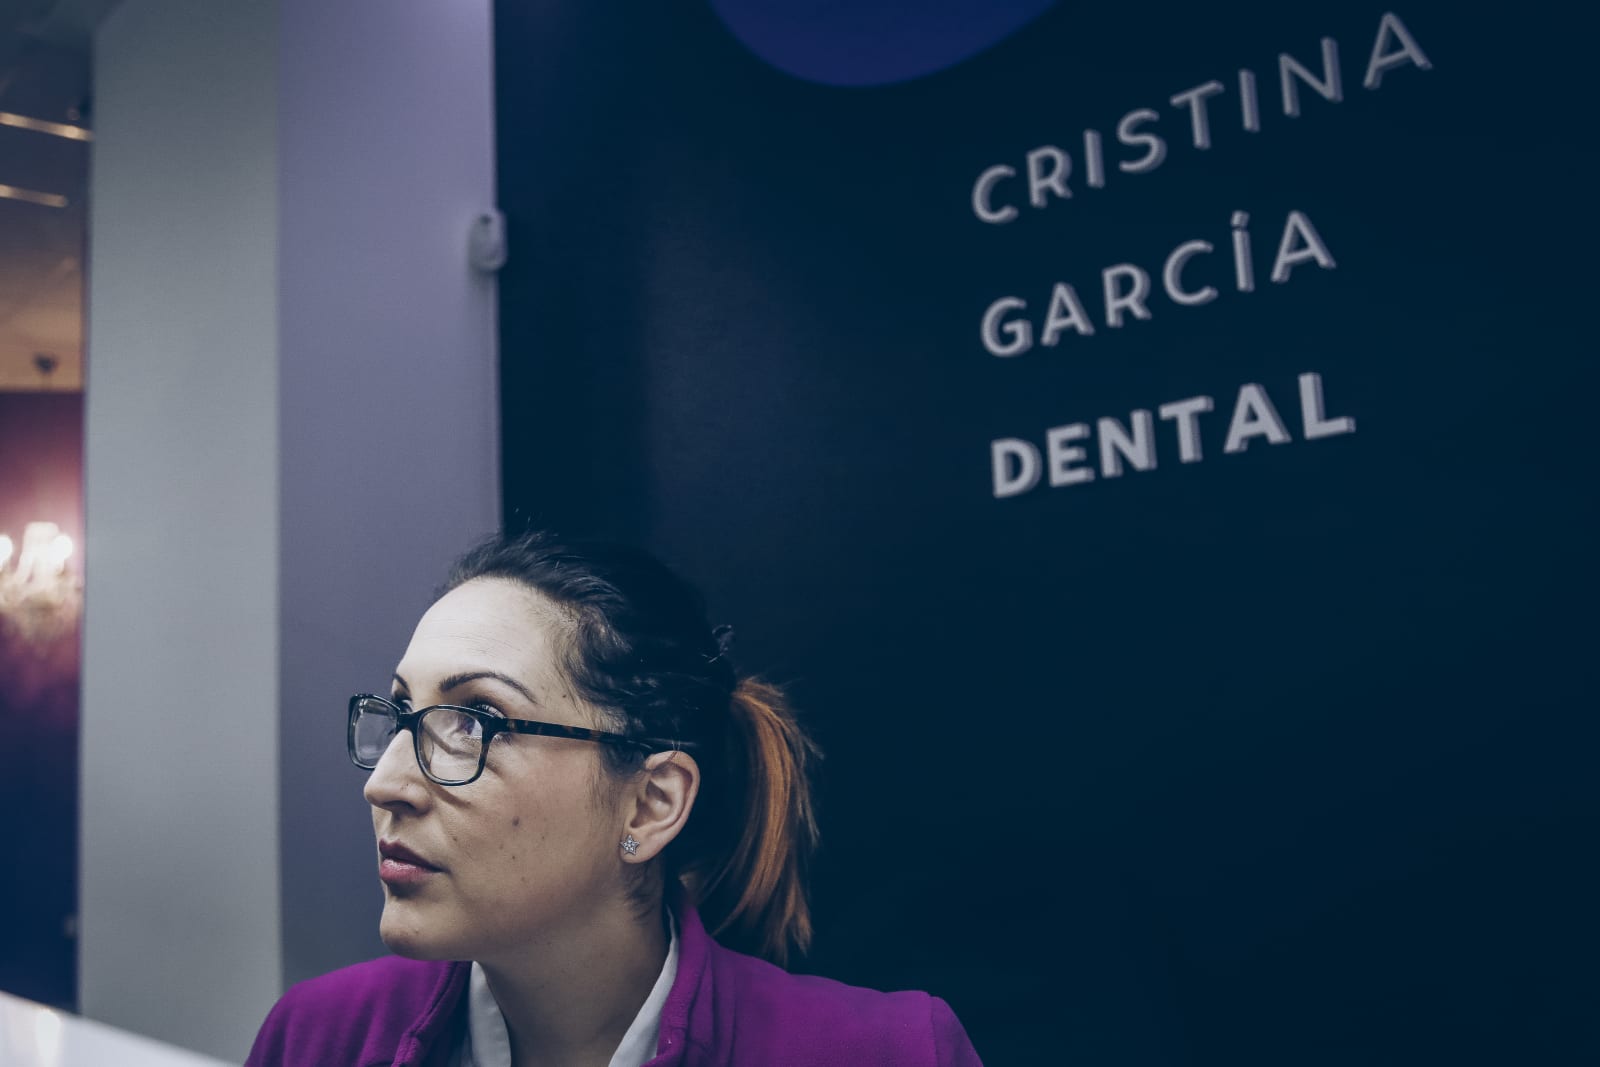 fotografia corporativa para empresas valencia Cristina Dental 34